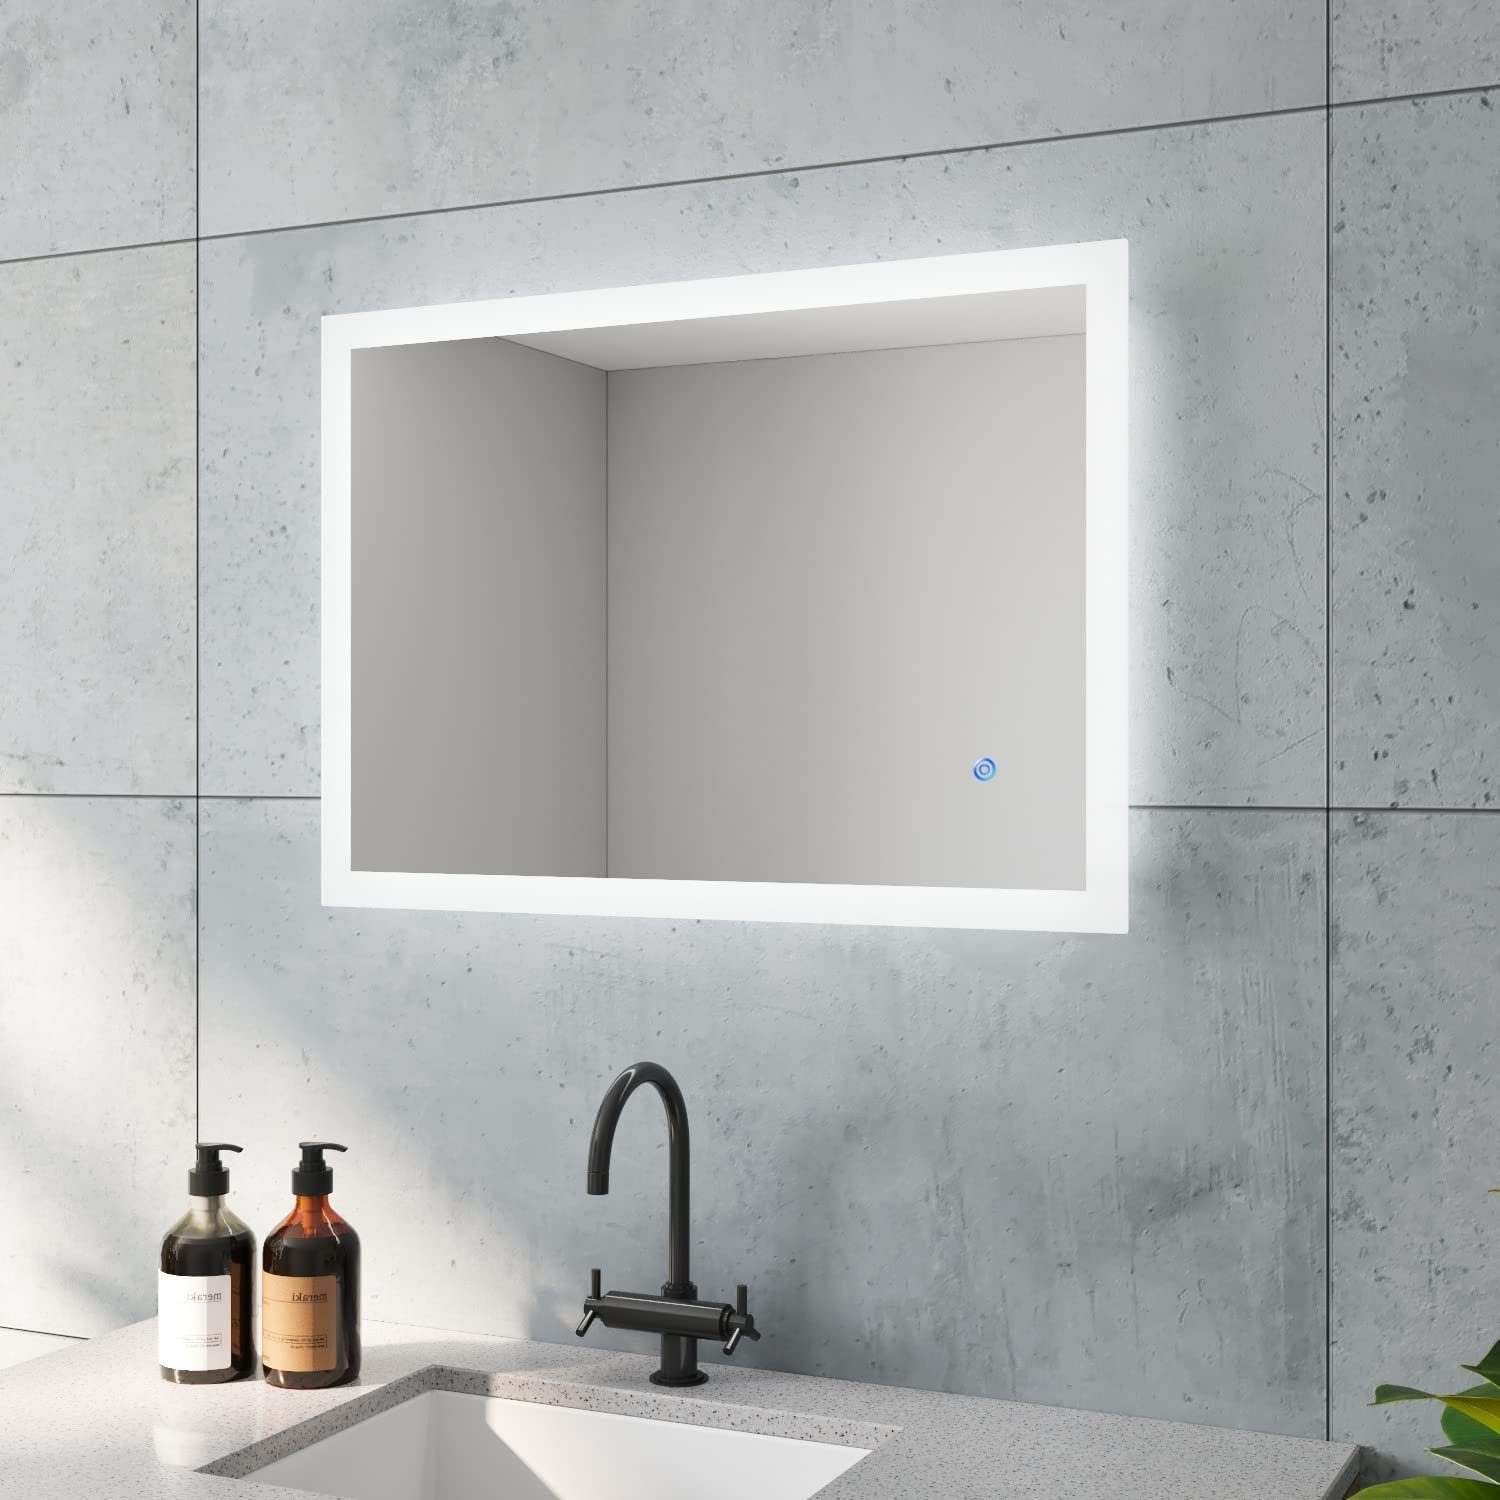 aqua batos LED-Lichtspiegel Led Spiegel Bad Badspiegel mit Beleuchtung  60x80 50x70cm, Kaltweiß 6400K, Touch Schalter, Dimmbar, Memory-Funktion,  Antifog